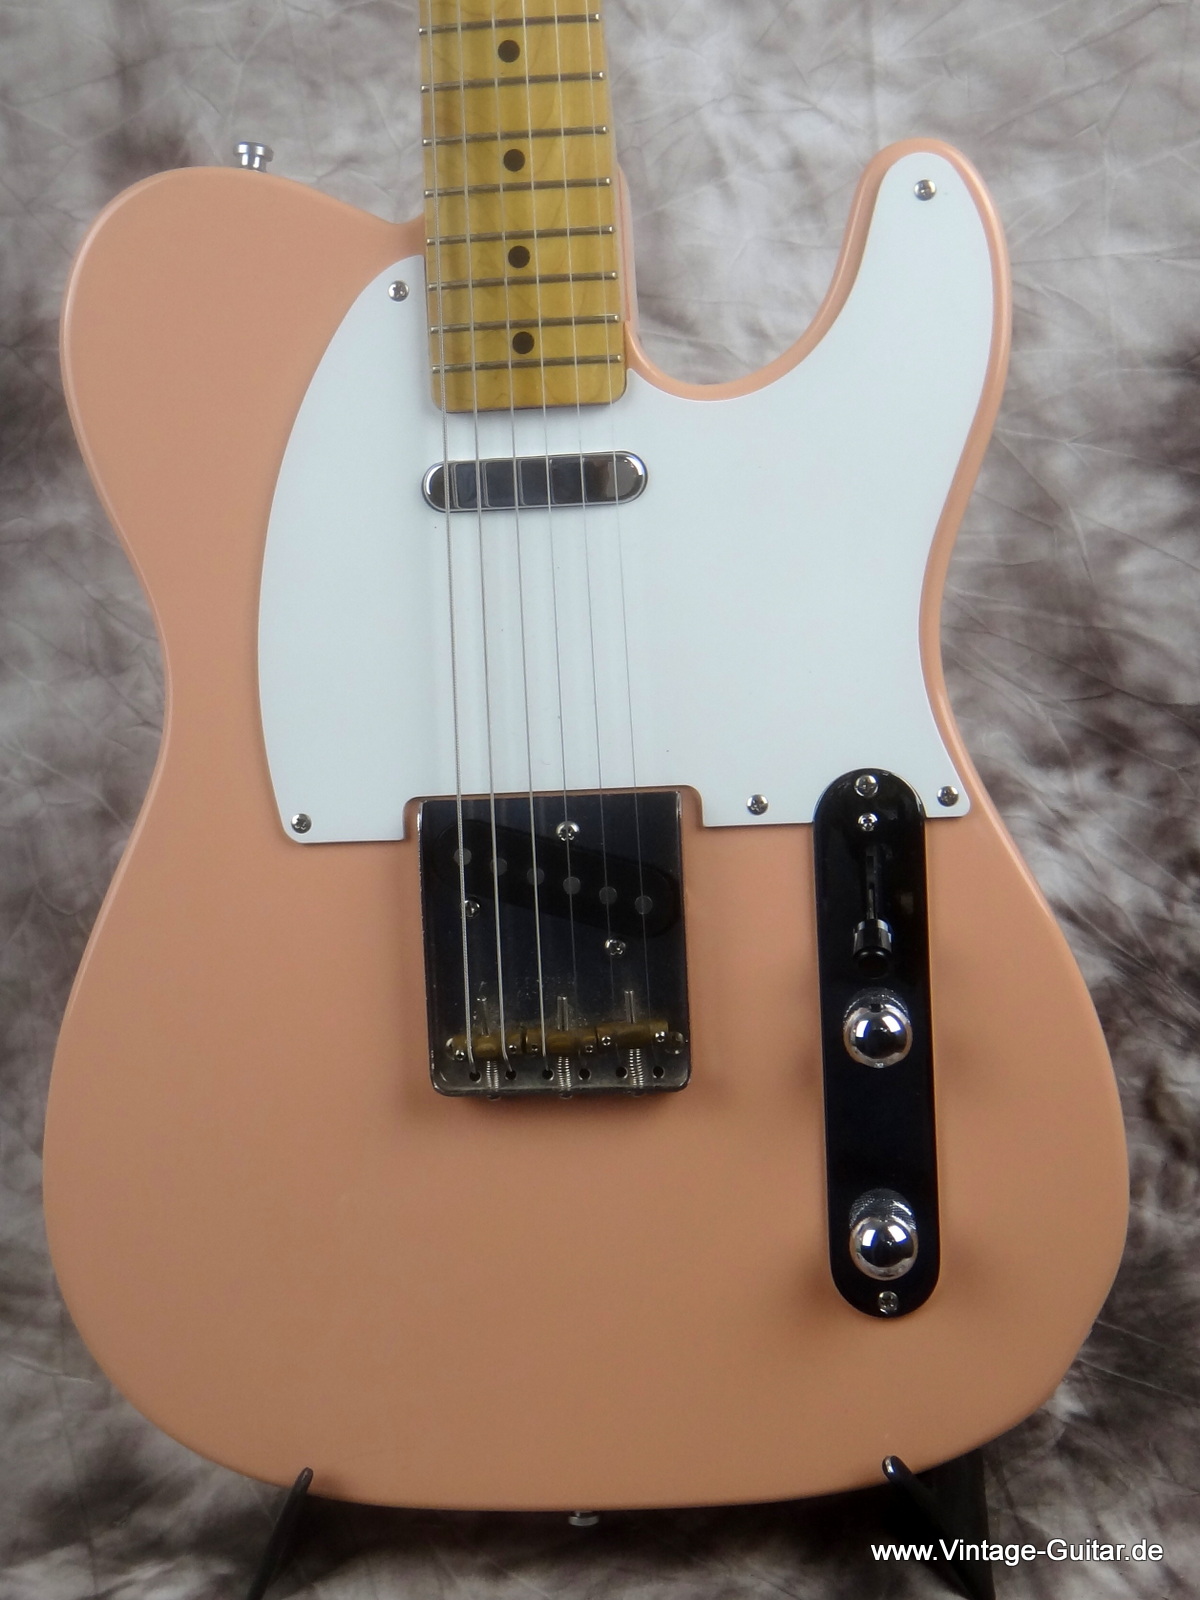 Fender_Telecaster-50s-Resissue-shell-pink-002.JPG